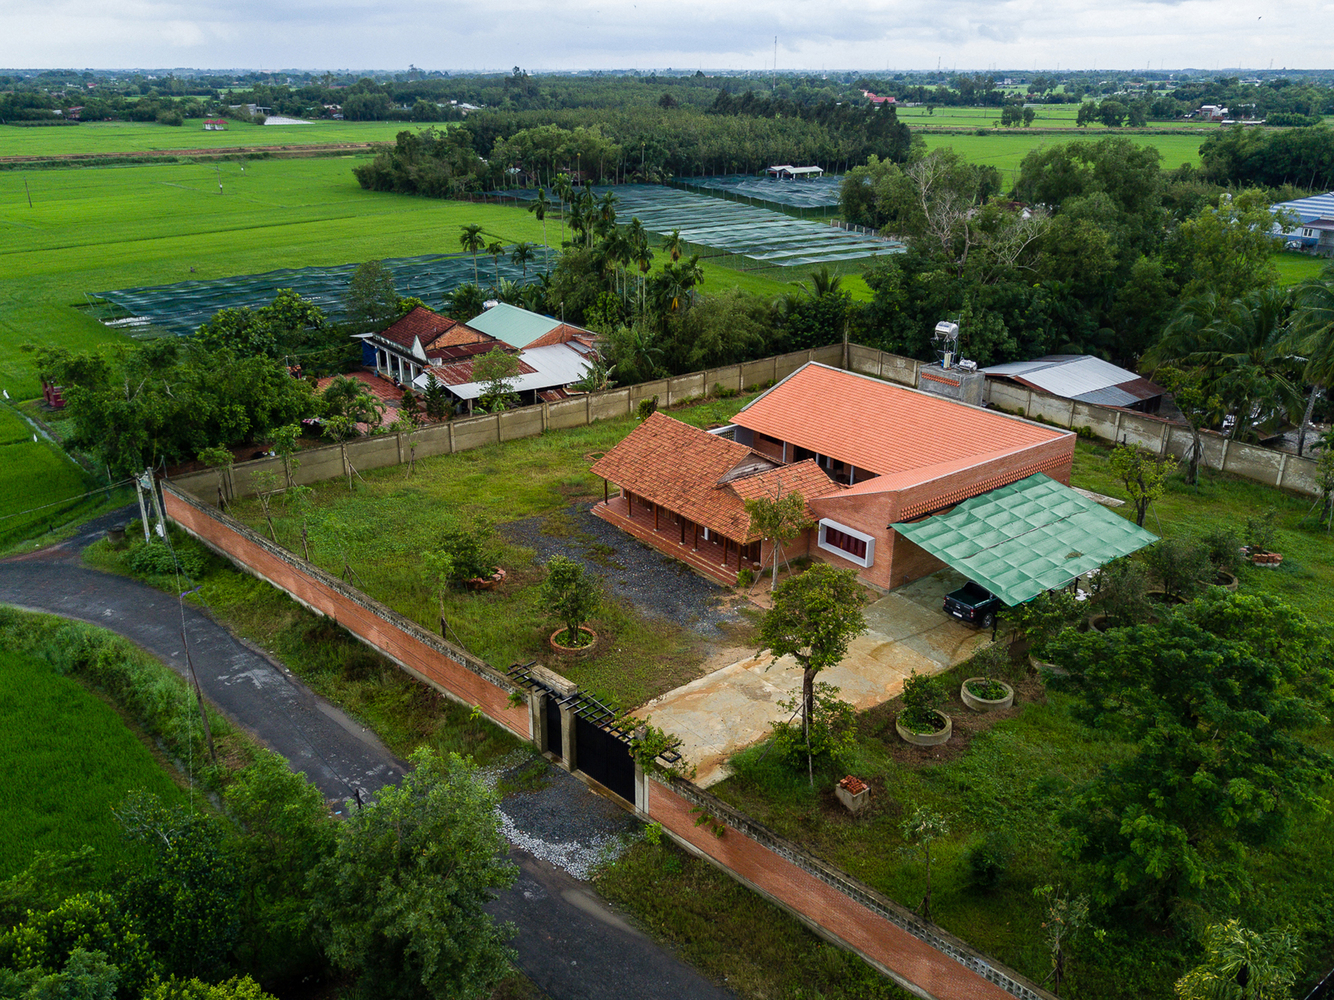 Nhà được xây dựng bằng gạch đỏ và có mái ngói kiểu Thái